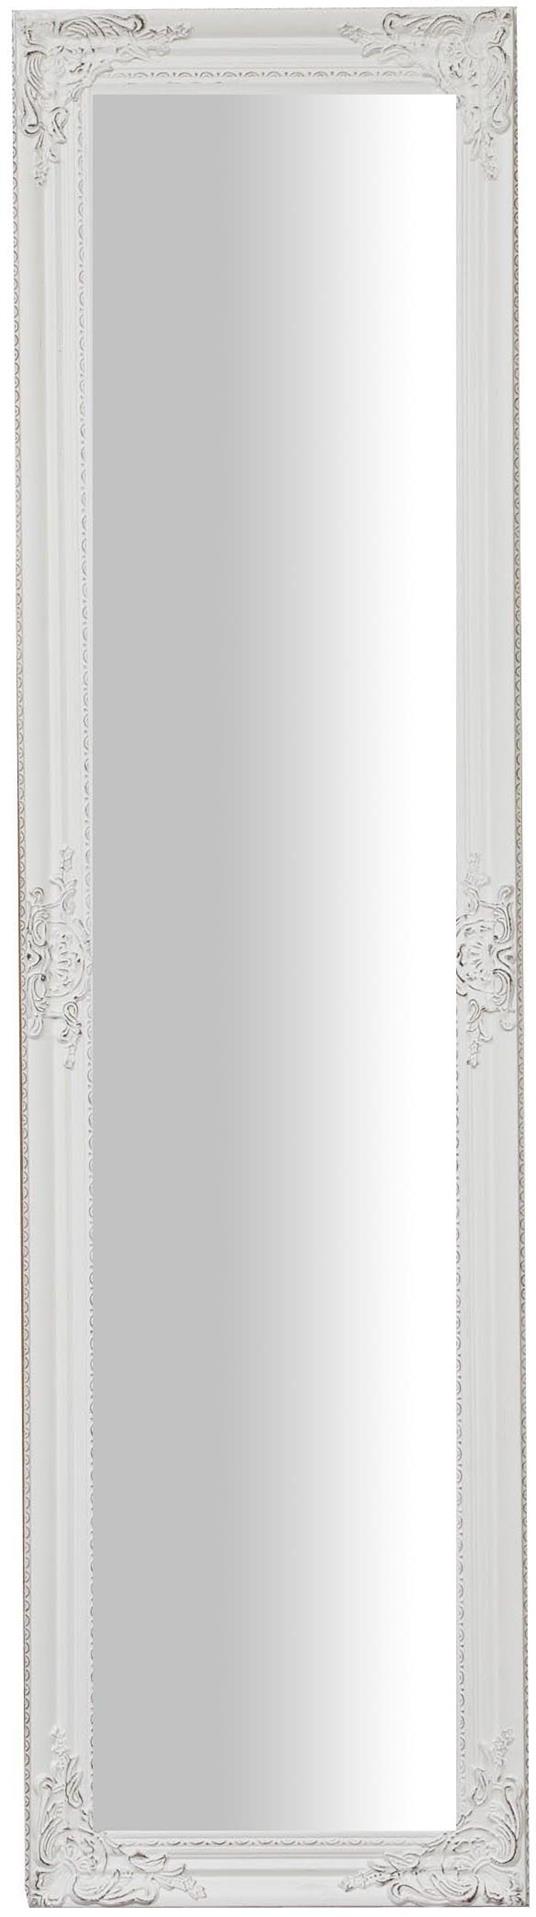 Specchio da terra camera da letto 164x44x4 cm Specchio grande da terra in  legno Bianco Specchio lungo - Biscottini - Idee regalo